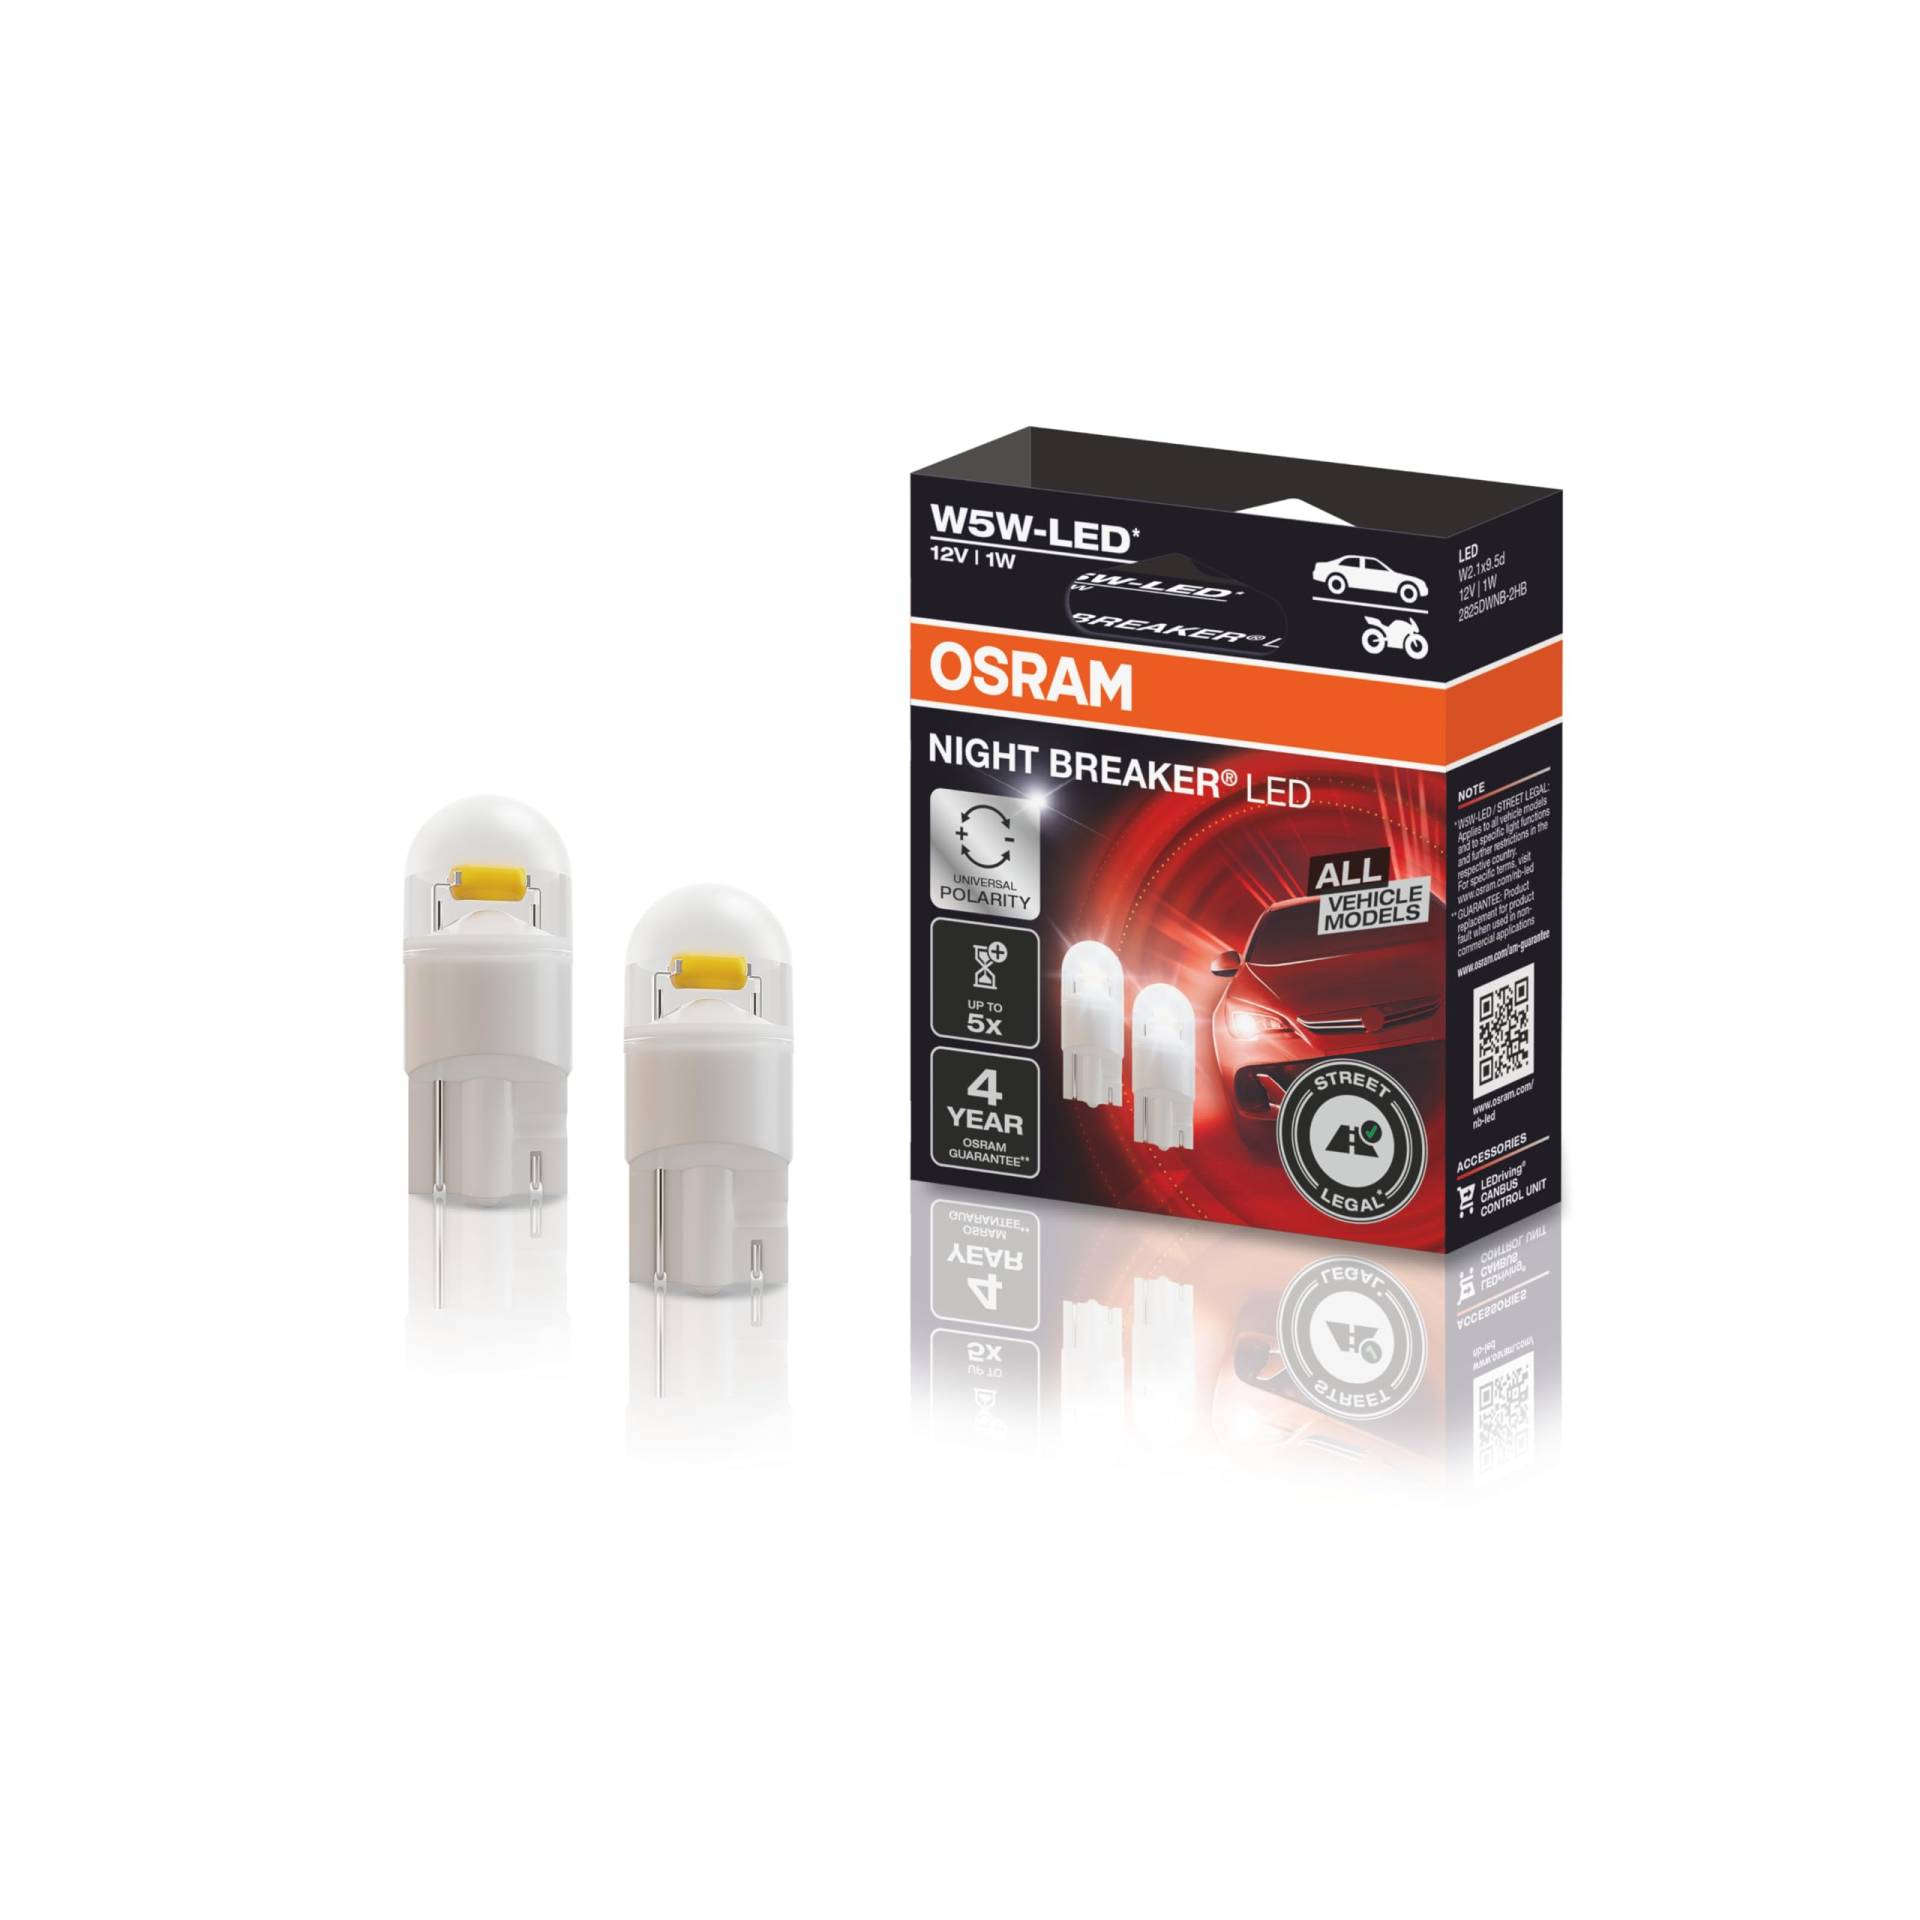 OSRAM NIGHT BREAKER LED W5W, universelles Standlicht/Positionslicht/Innenraumlicht, 12V, Weiß von Osram